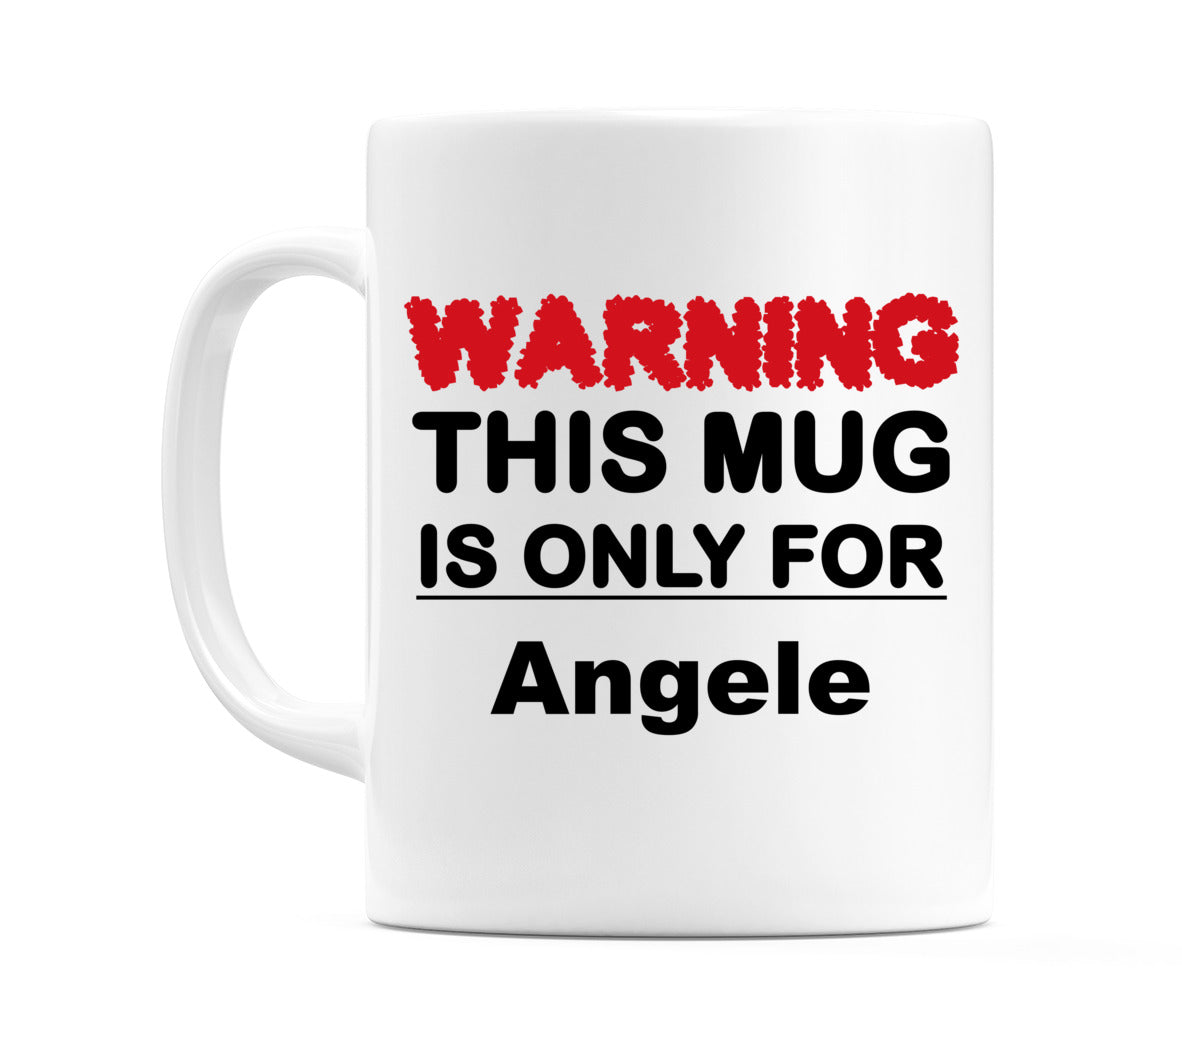 Warning This Mug is ONLY for Angele Mug